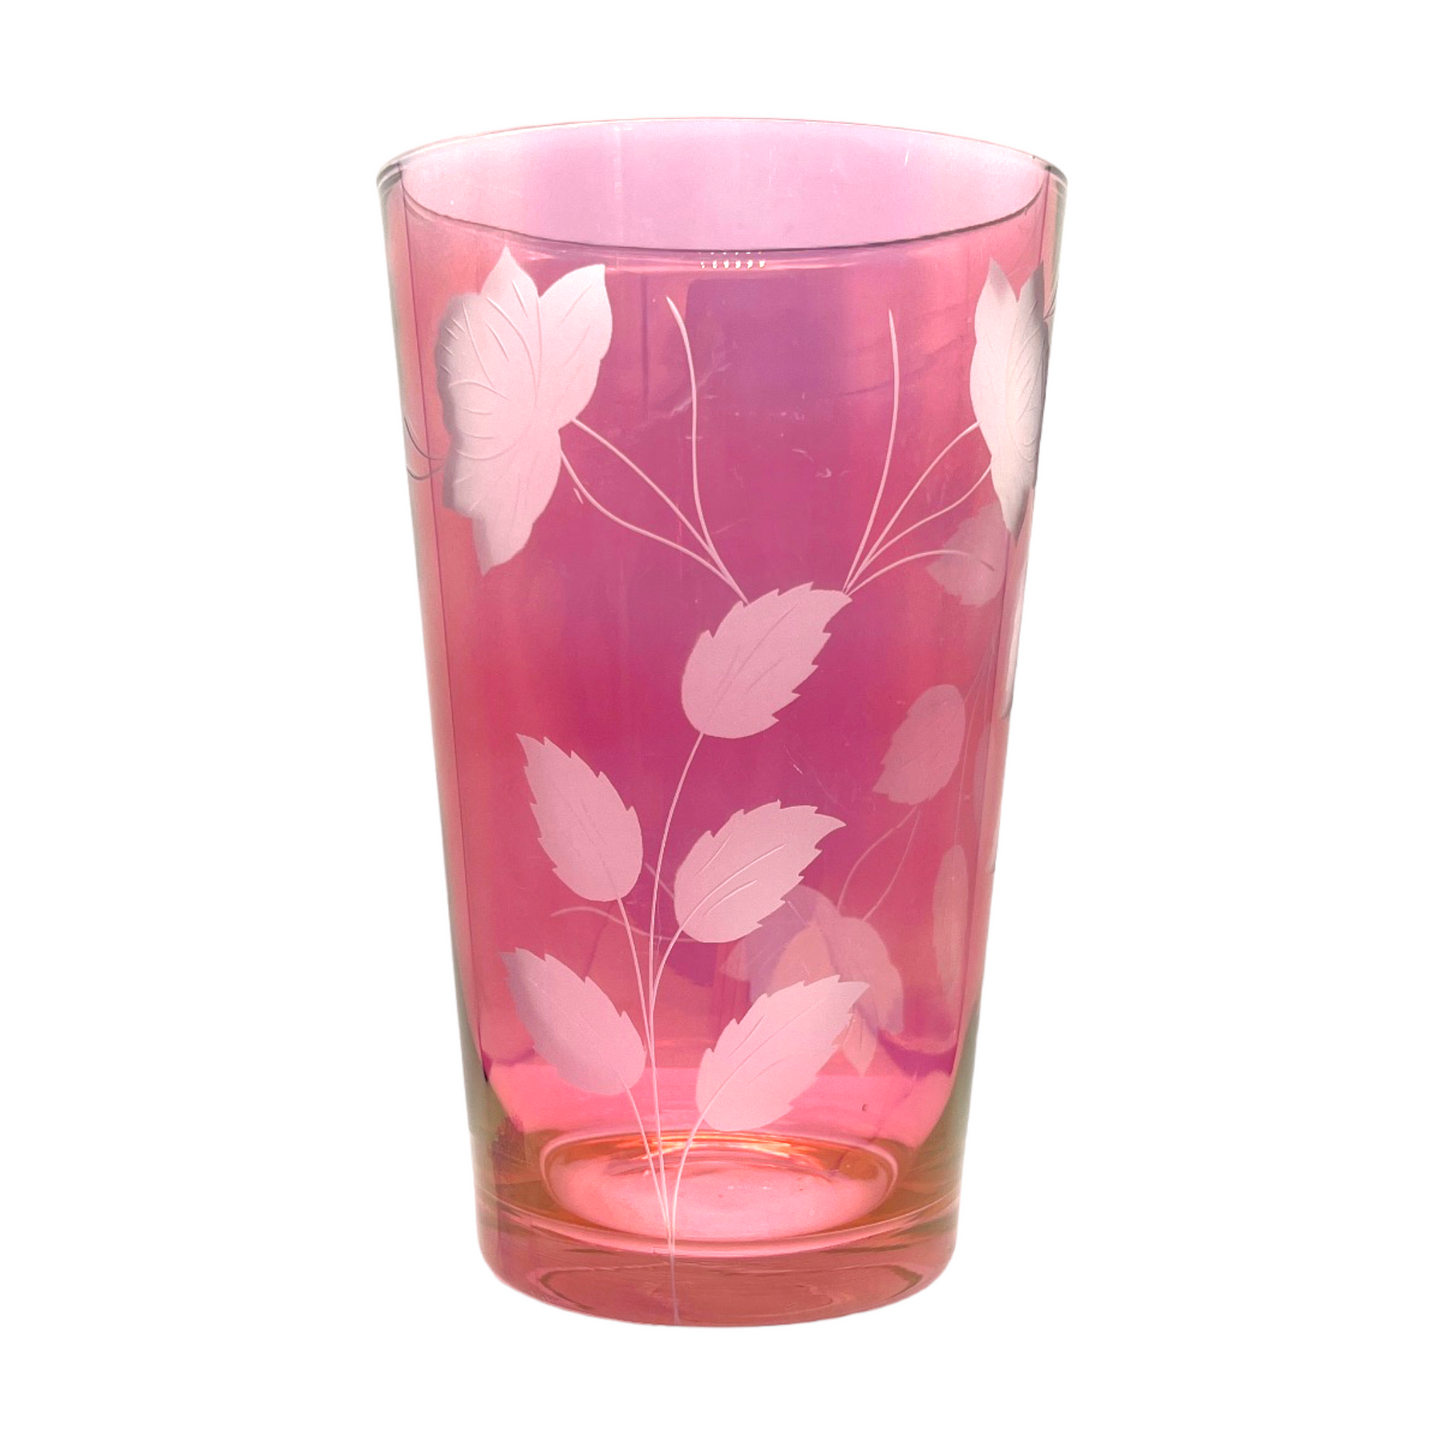 Vintage Rose Etched Cranberry Vase - Artistry Preserved